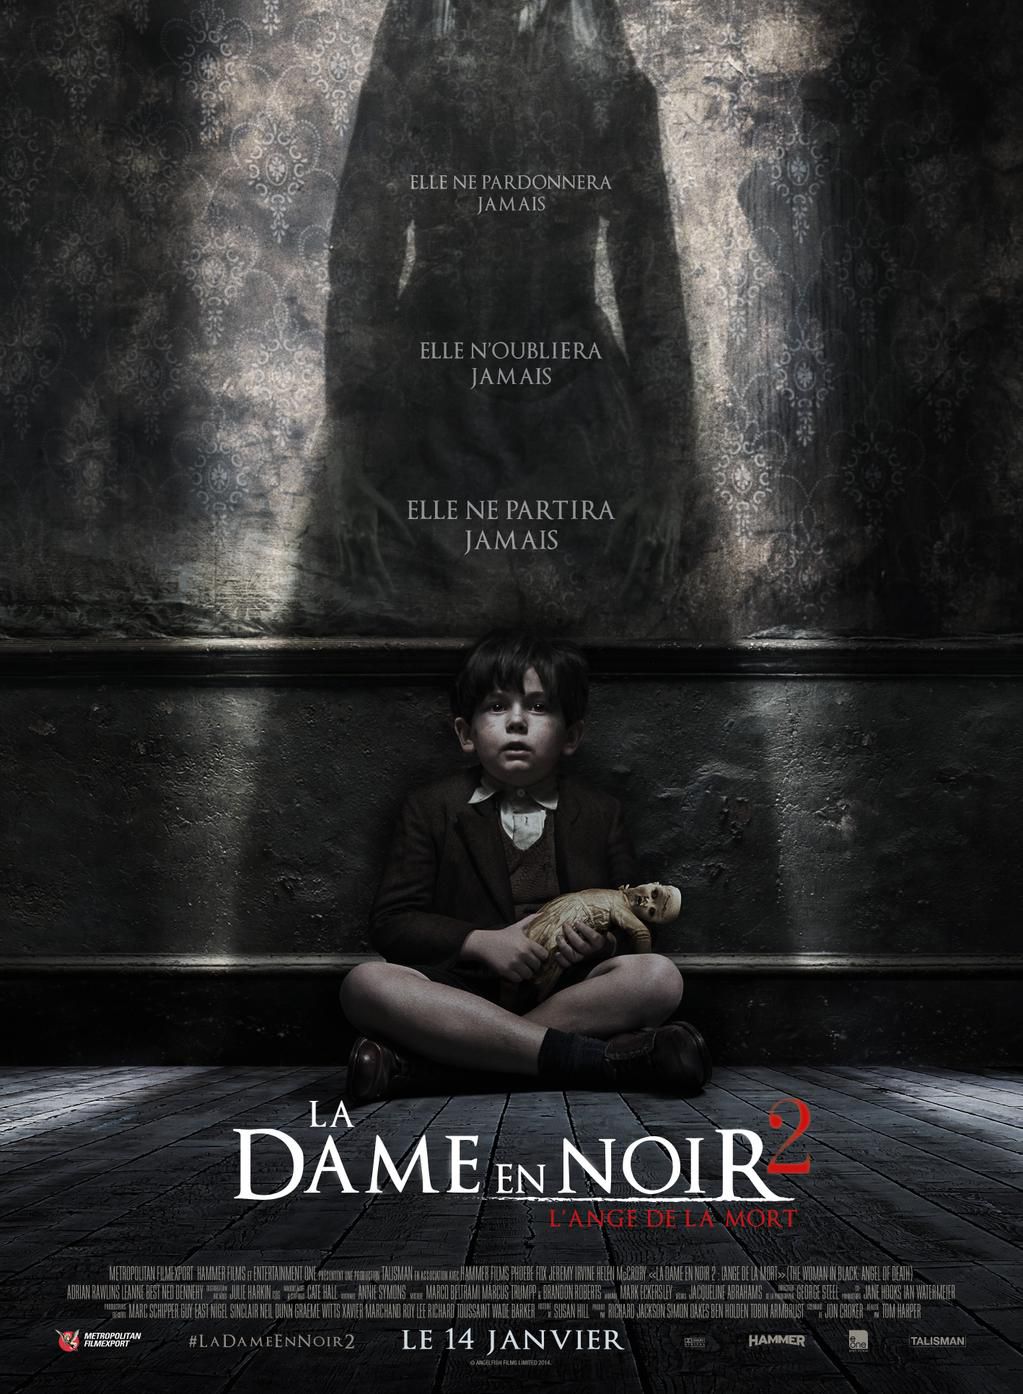 La Dame en Noir 2 : L'Ange de la Mort - Film (2015) streaming VF gratuit complet